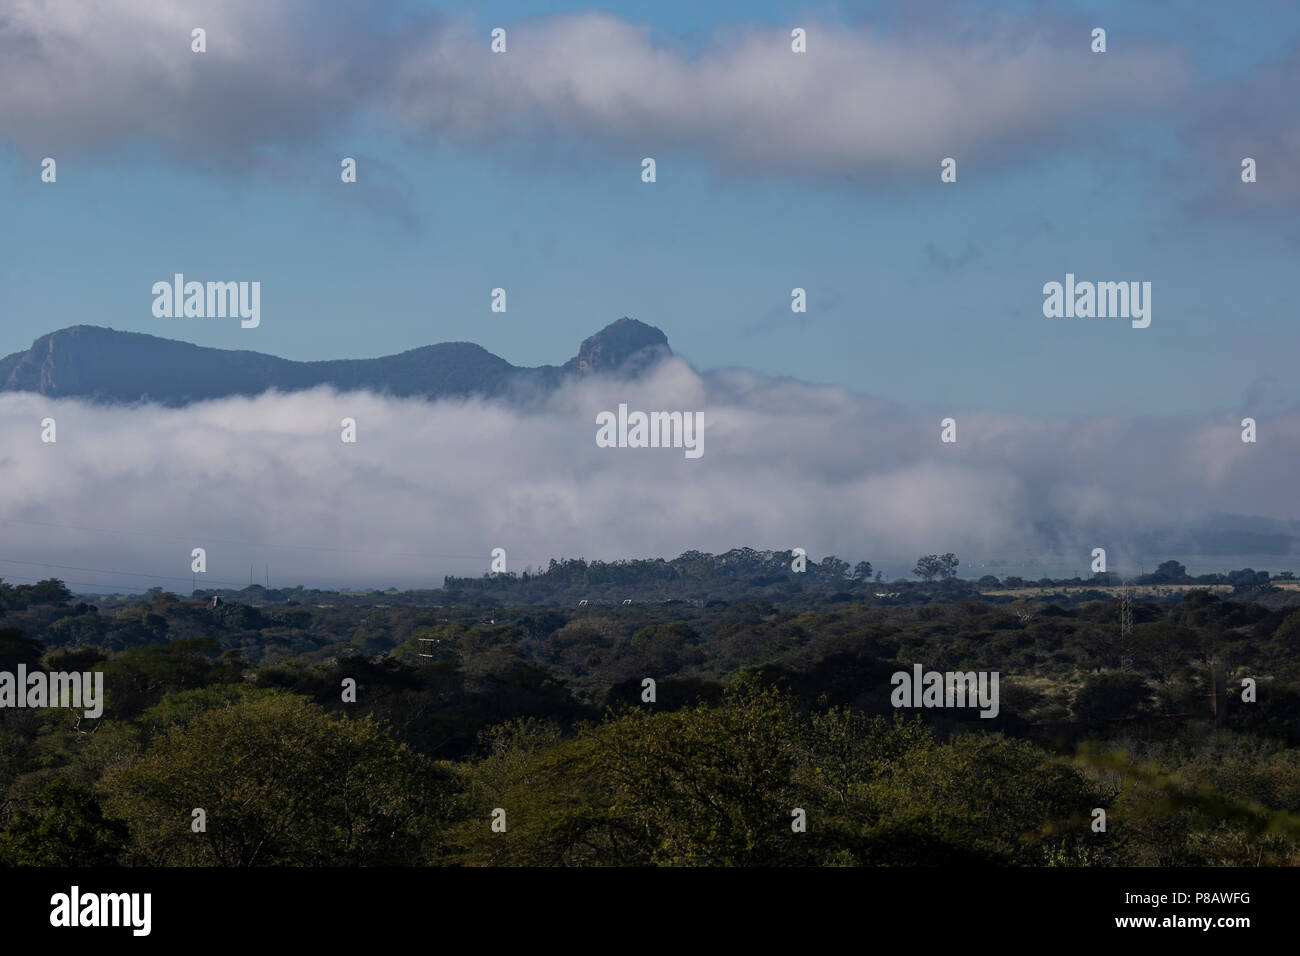 Vue de Ghost Mountain dans la province du KwaZulu Natal Afrique du Sud avec brume matinale se trouvant sur le Zimanga Private Game Reserve Banque D'Images